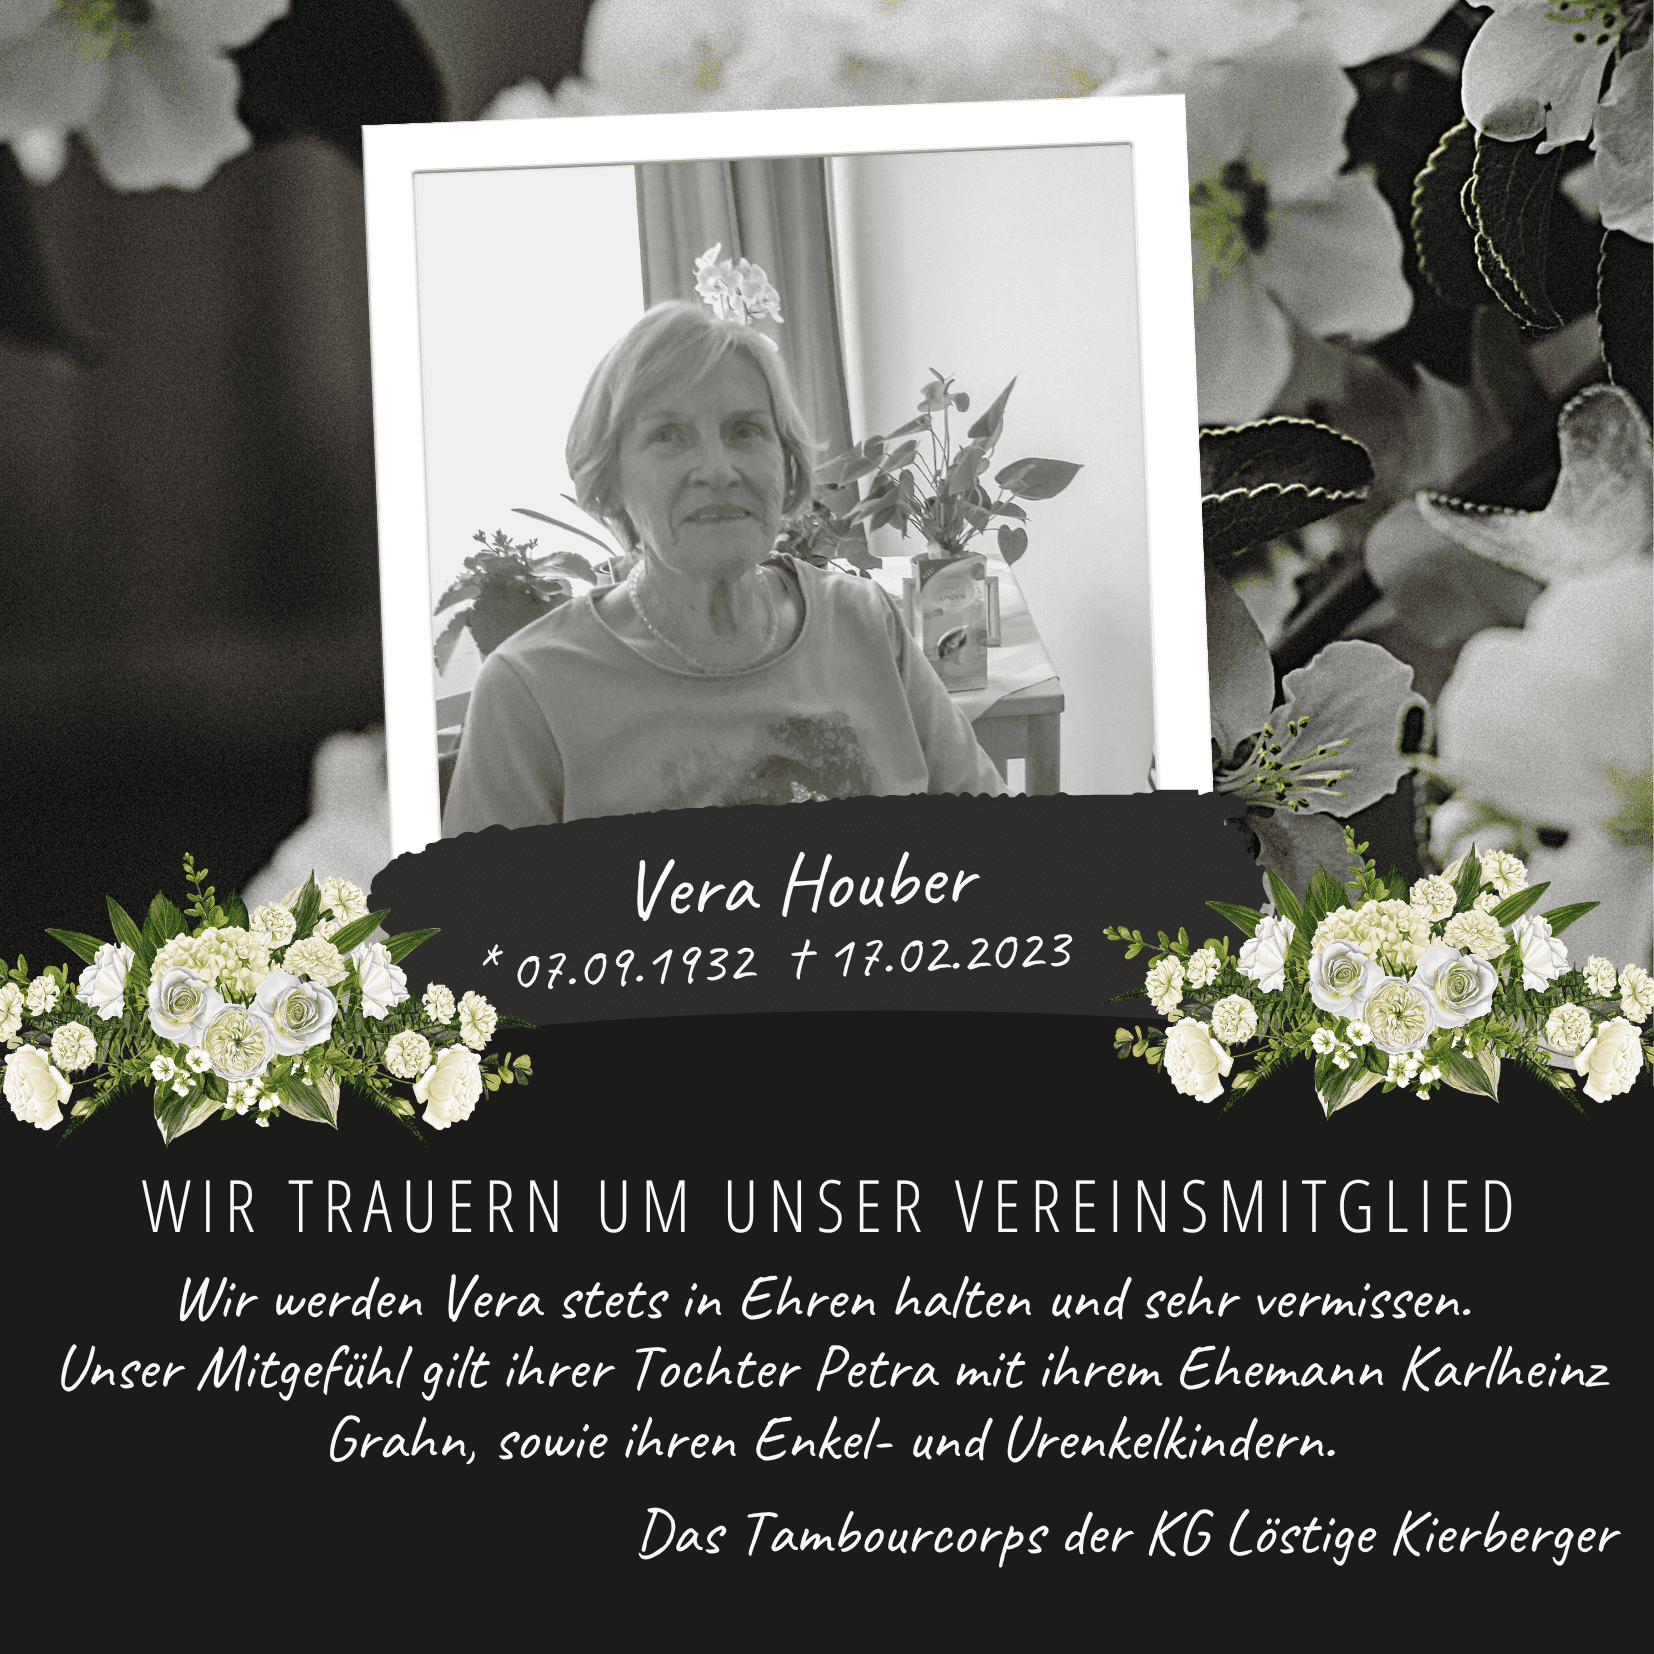 Wir trauern um unser Vereinsmitglied Vera Houber